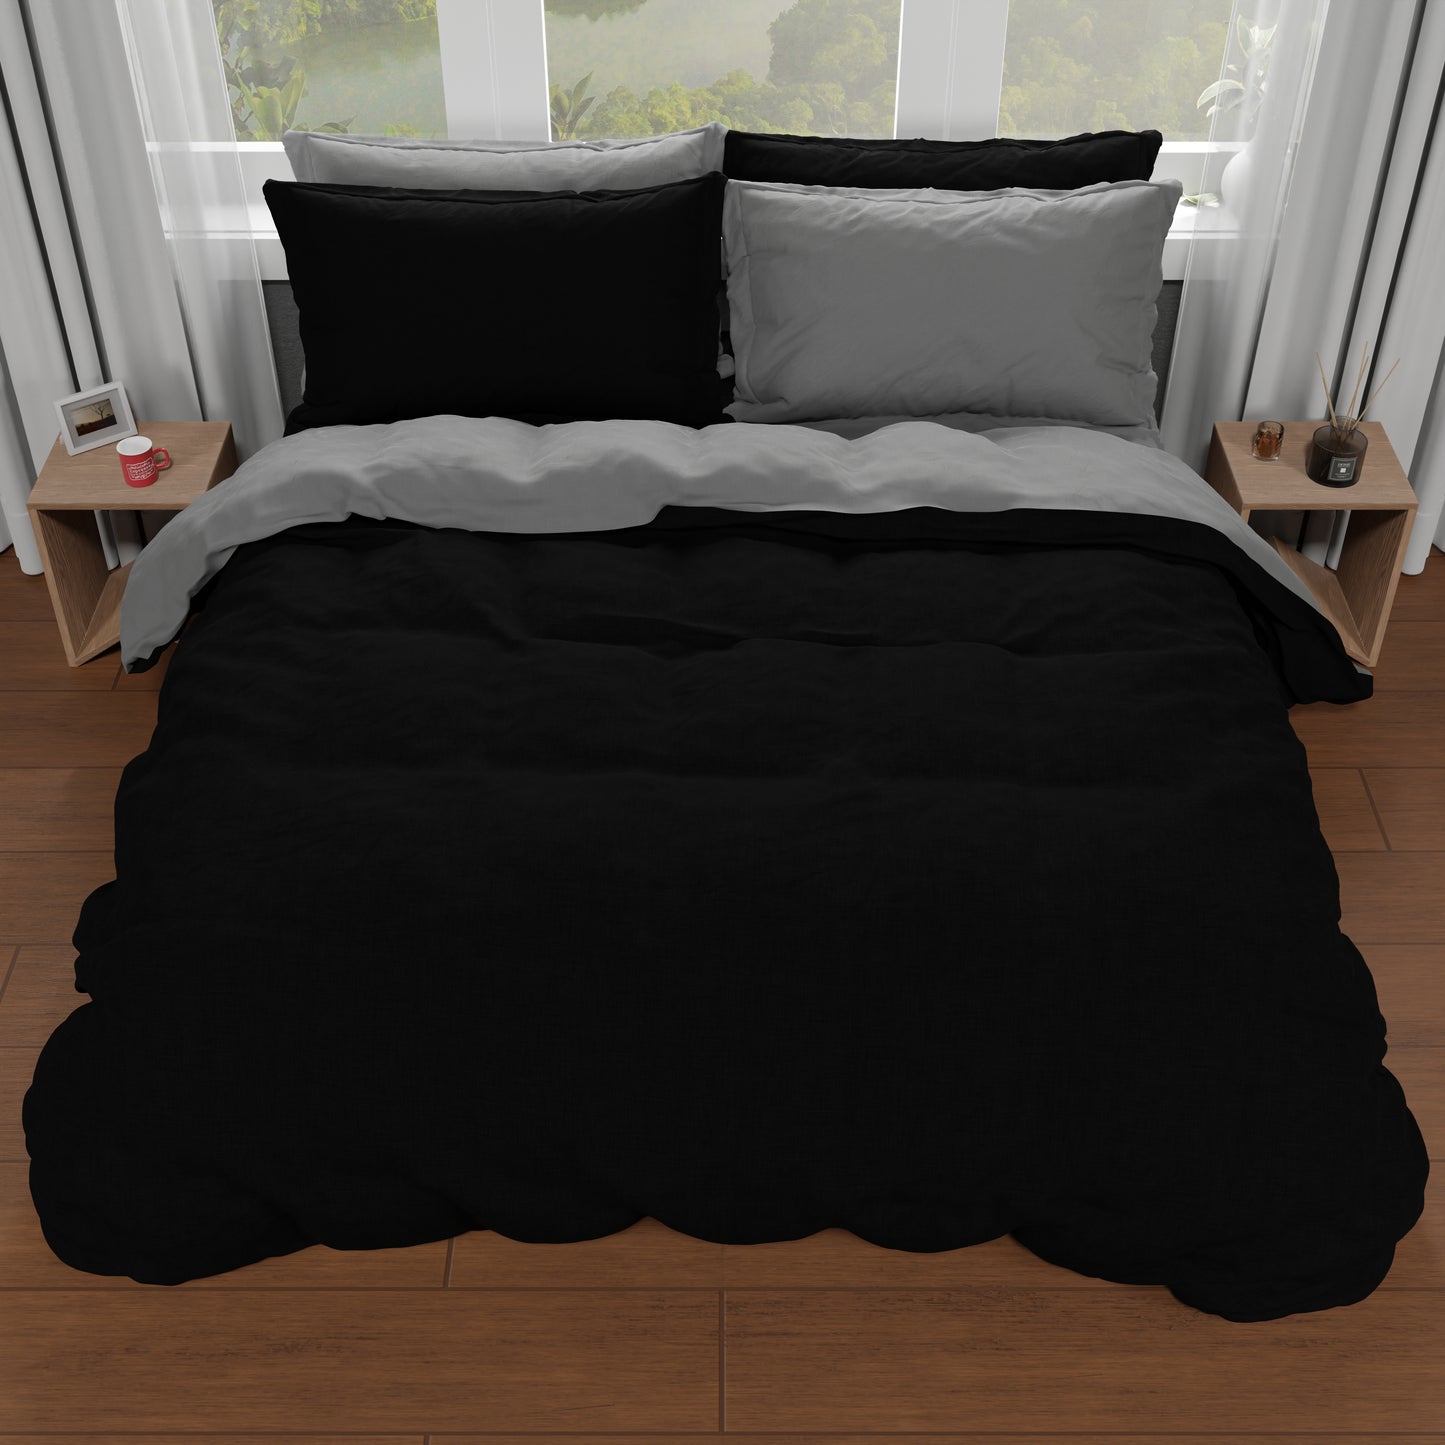 Double Duvet Cover, Duvet Cover and Pillowcases, Dark Grey/Black